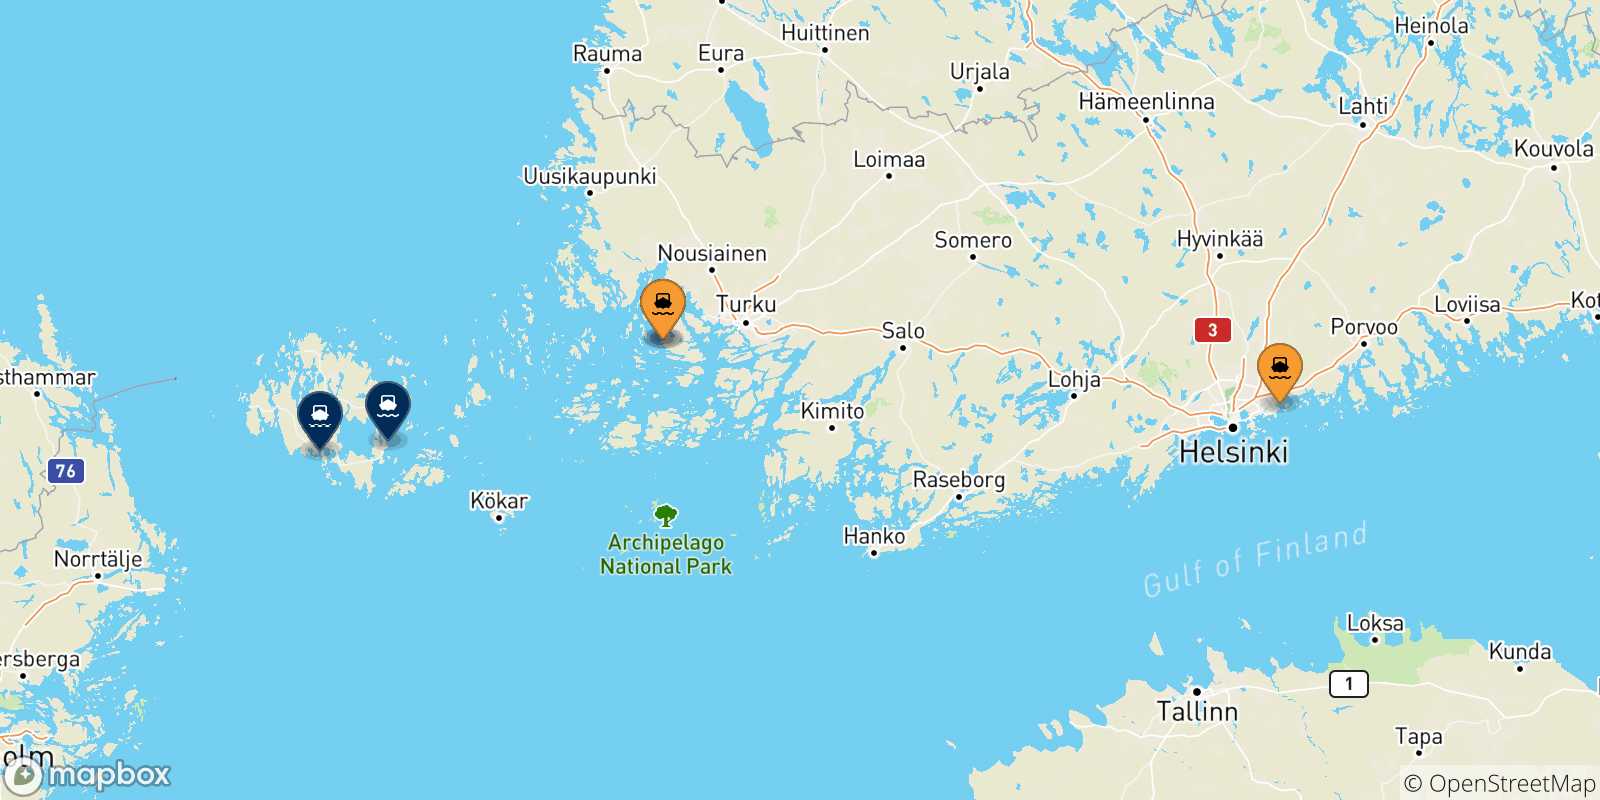 Mappa delle possibili rotte tra la Finlandia e le Isole Aland